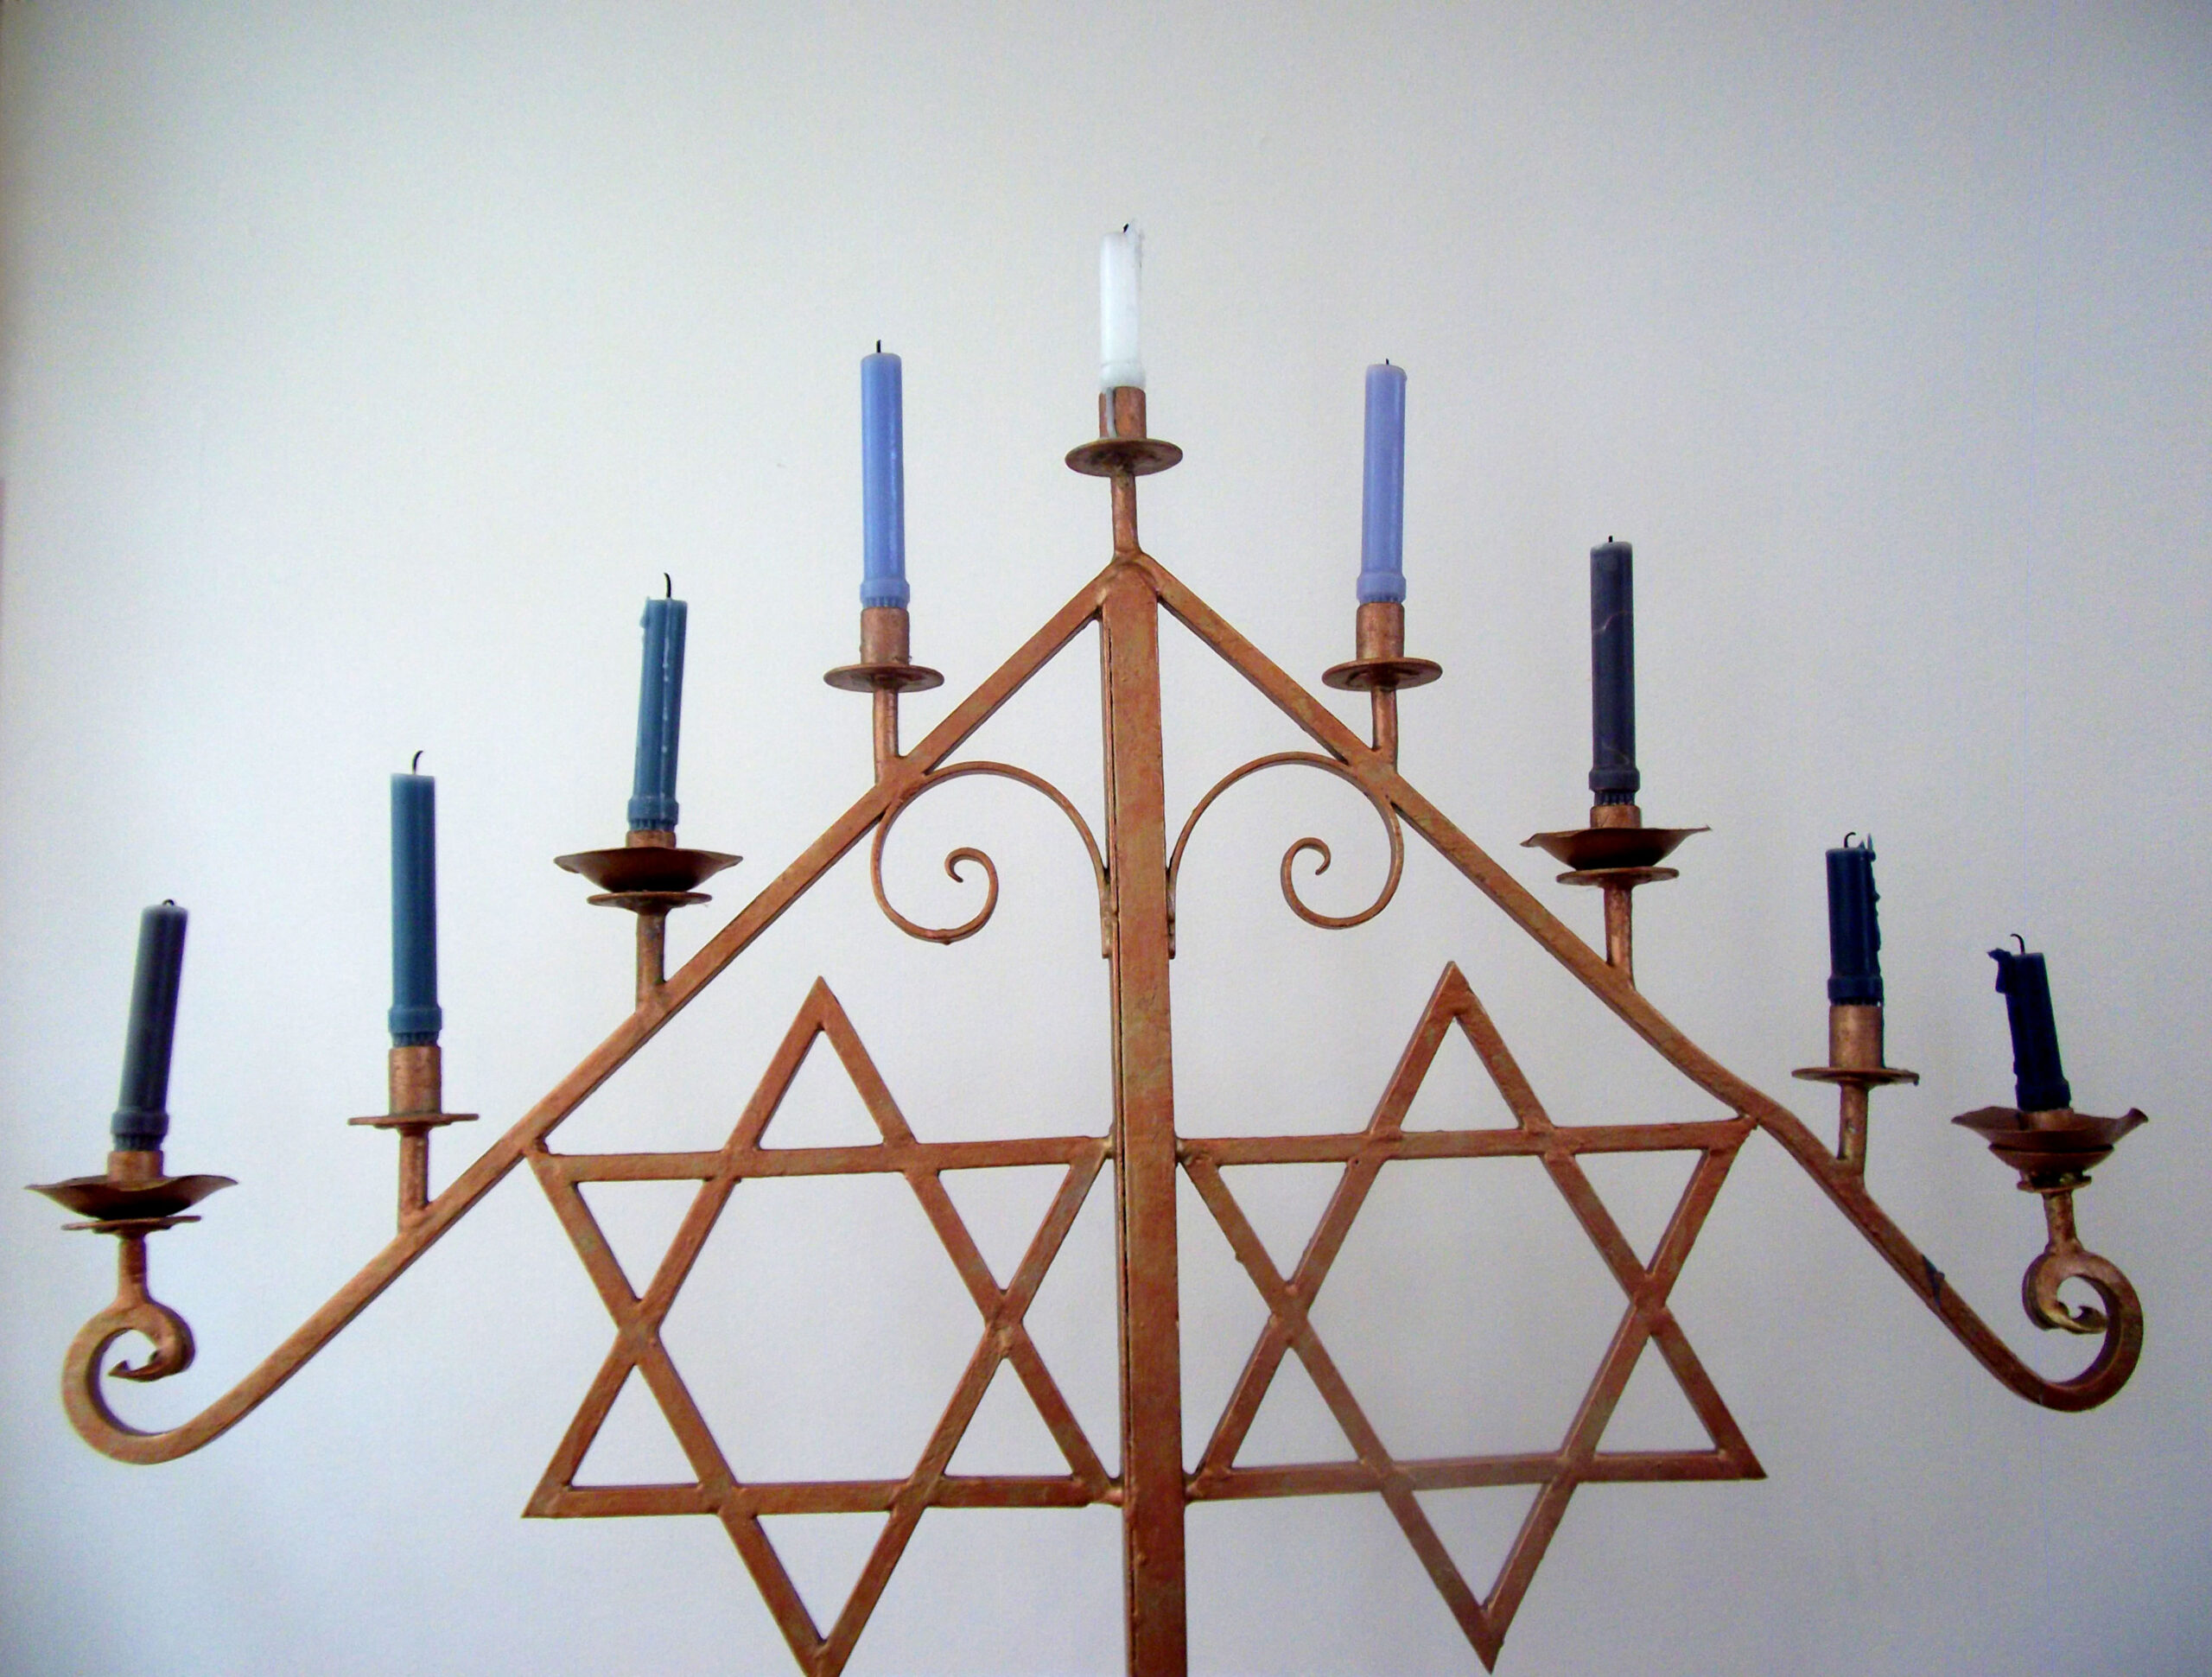 Sinagoga Histórica Justo Sierra, judaísmo a puertas abiertas